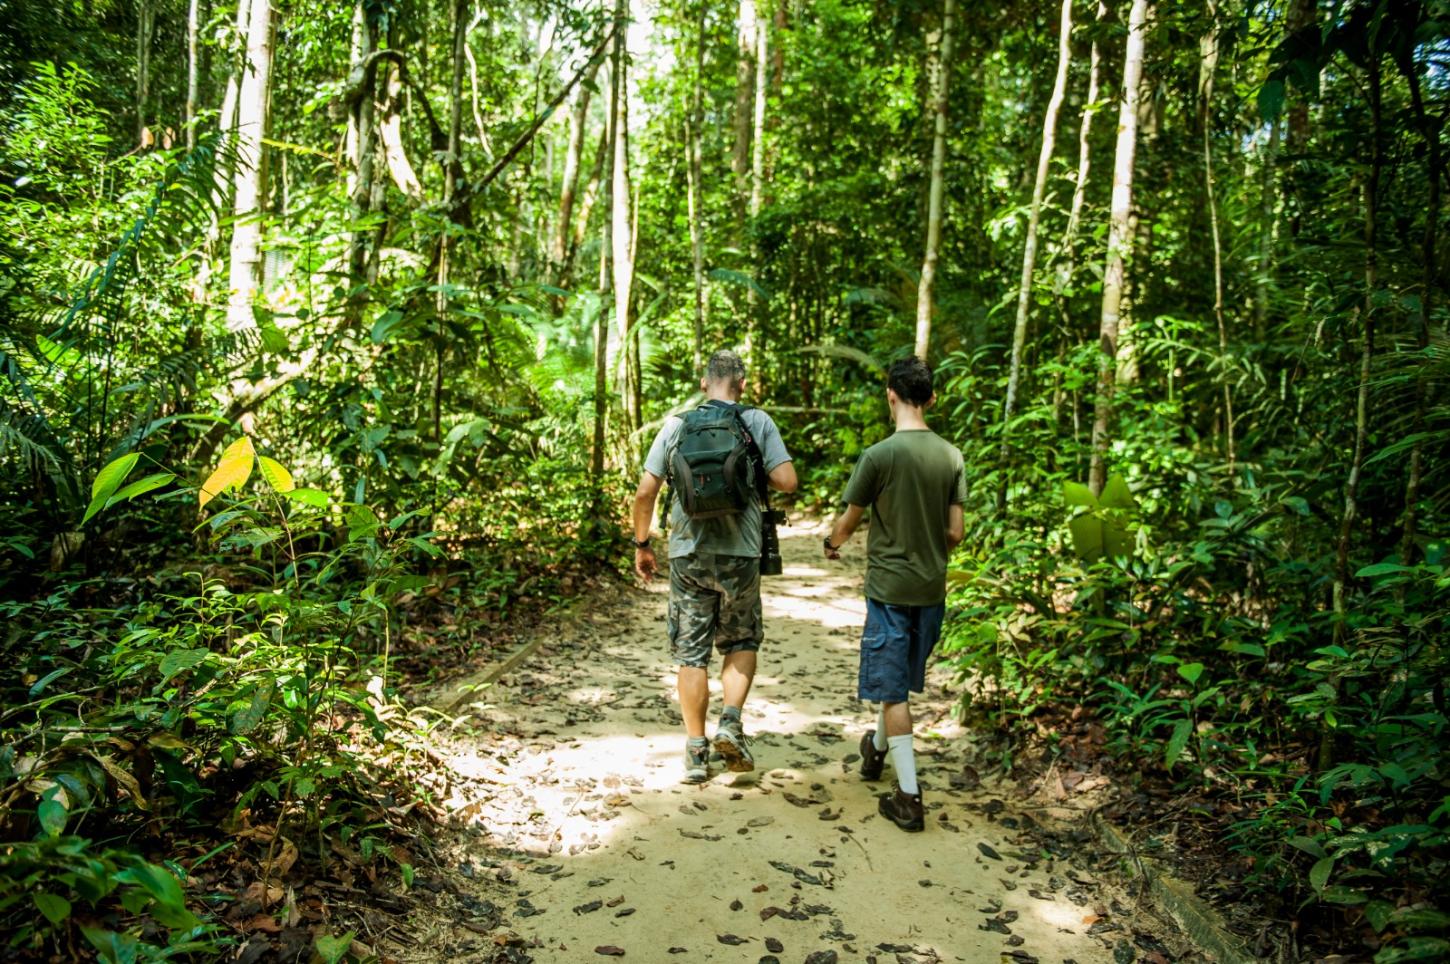 Atrativos turísticos do Amazonas são roteiro para manter uma vida saudável